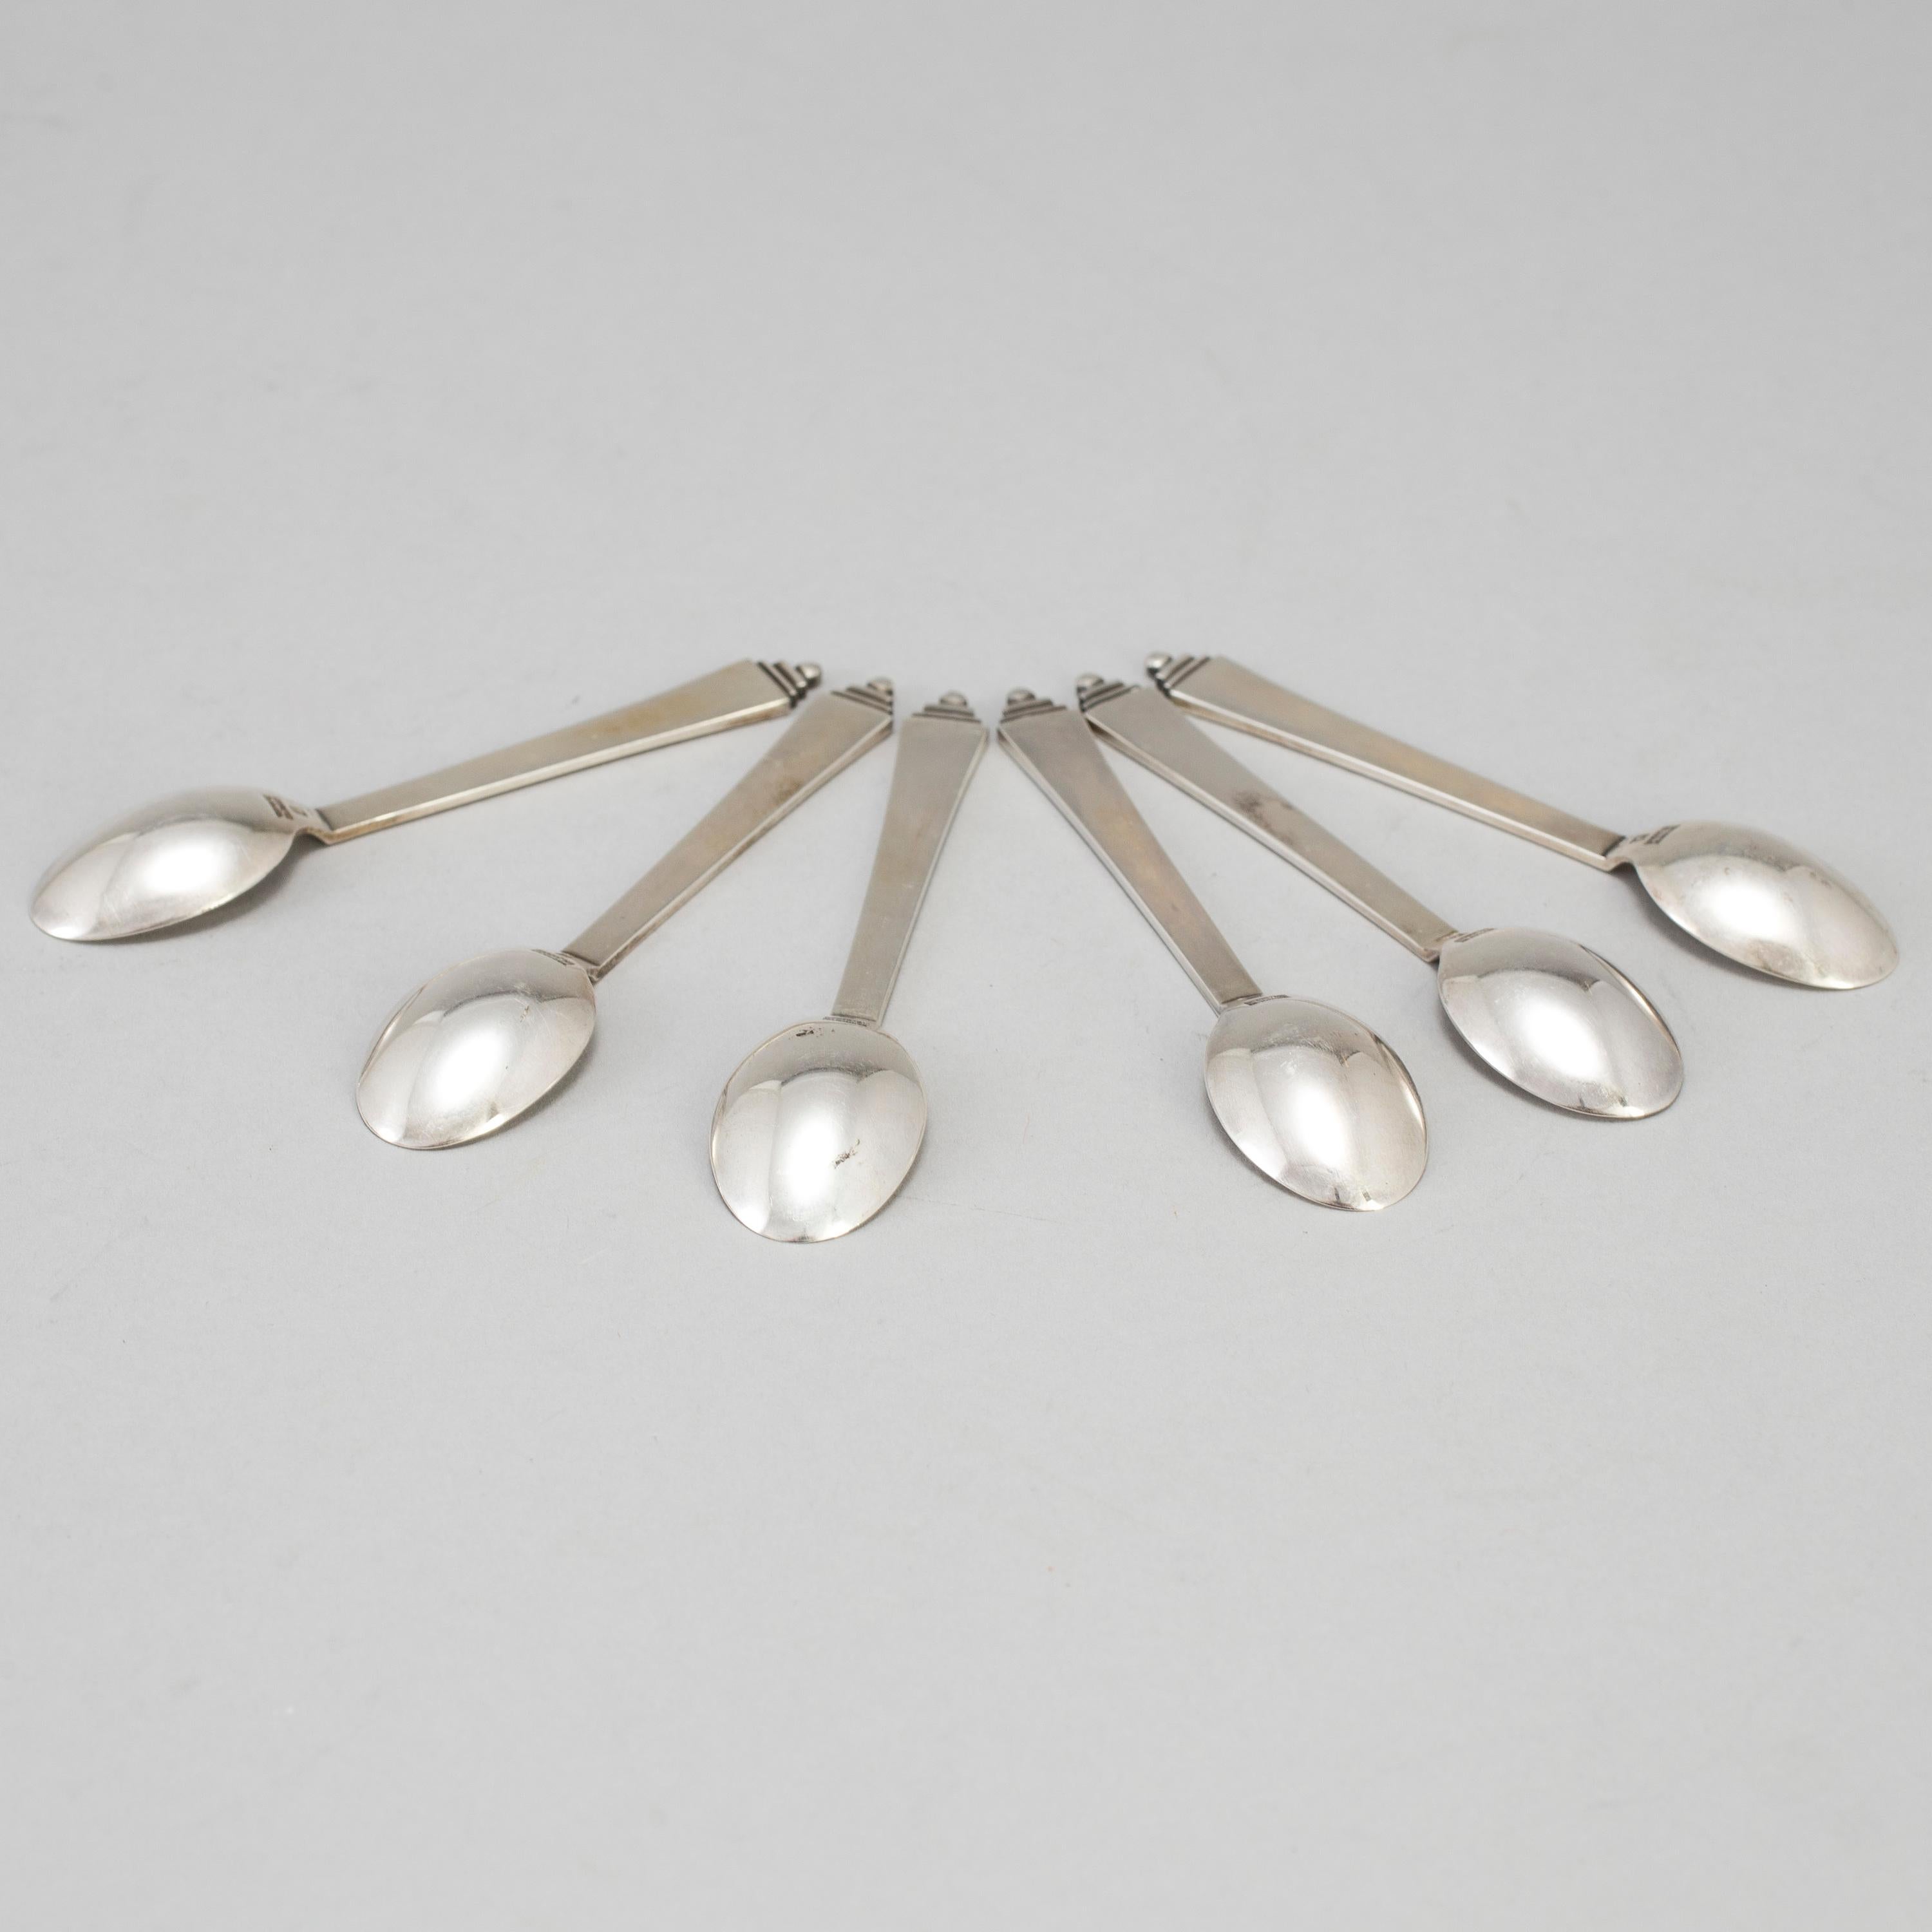 Silver Georg Jansen Moka Spoon Model 